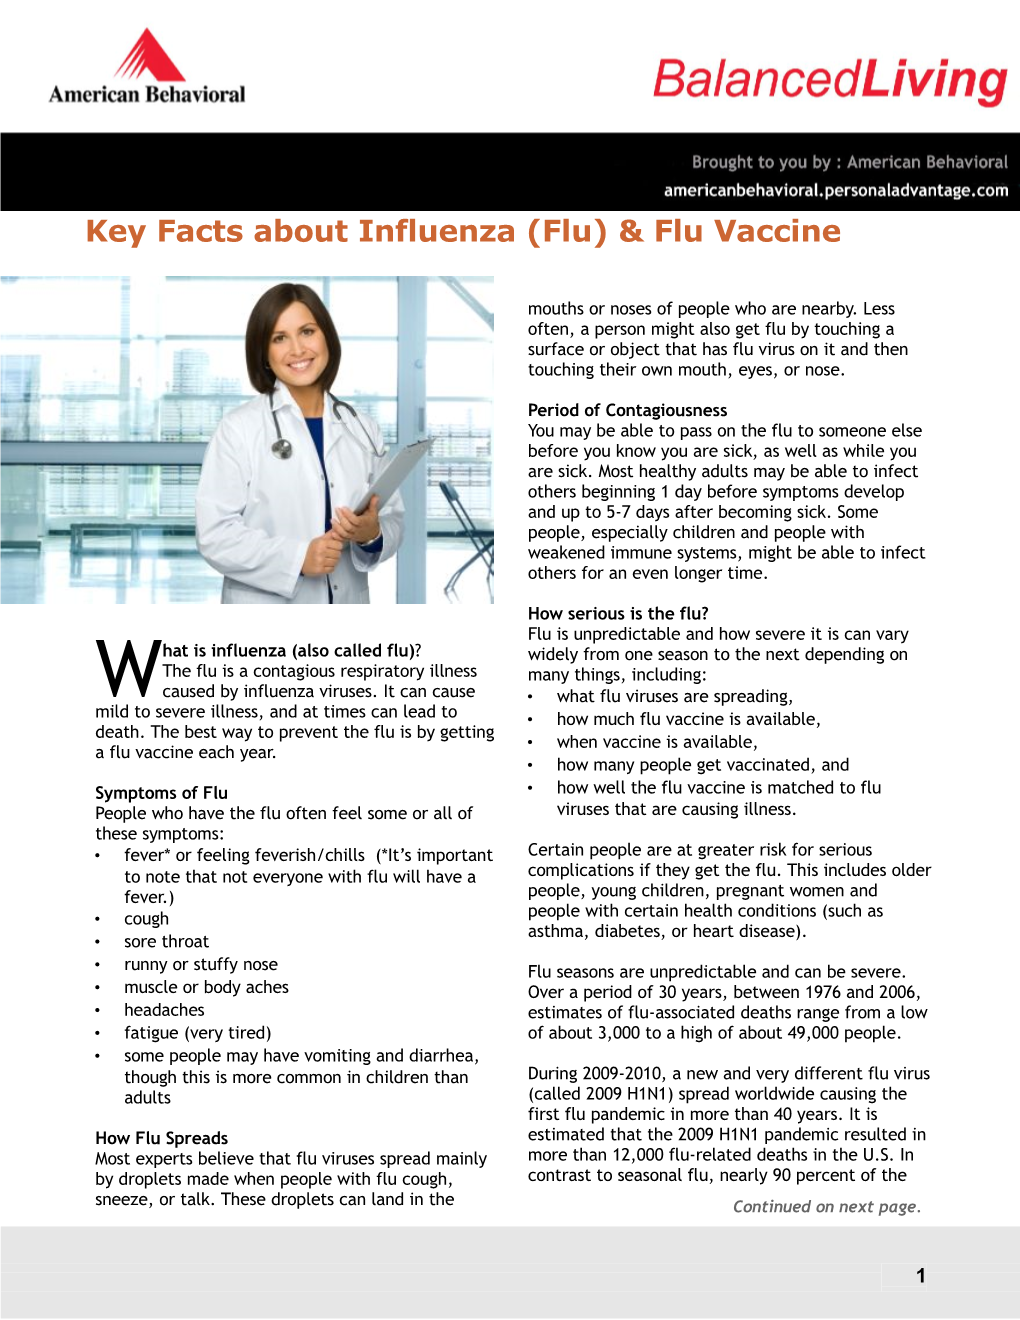 Key Facts About Influenza (Flu) & Flu Vaccine